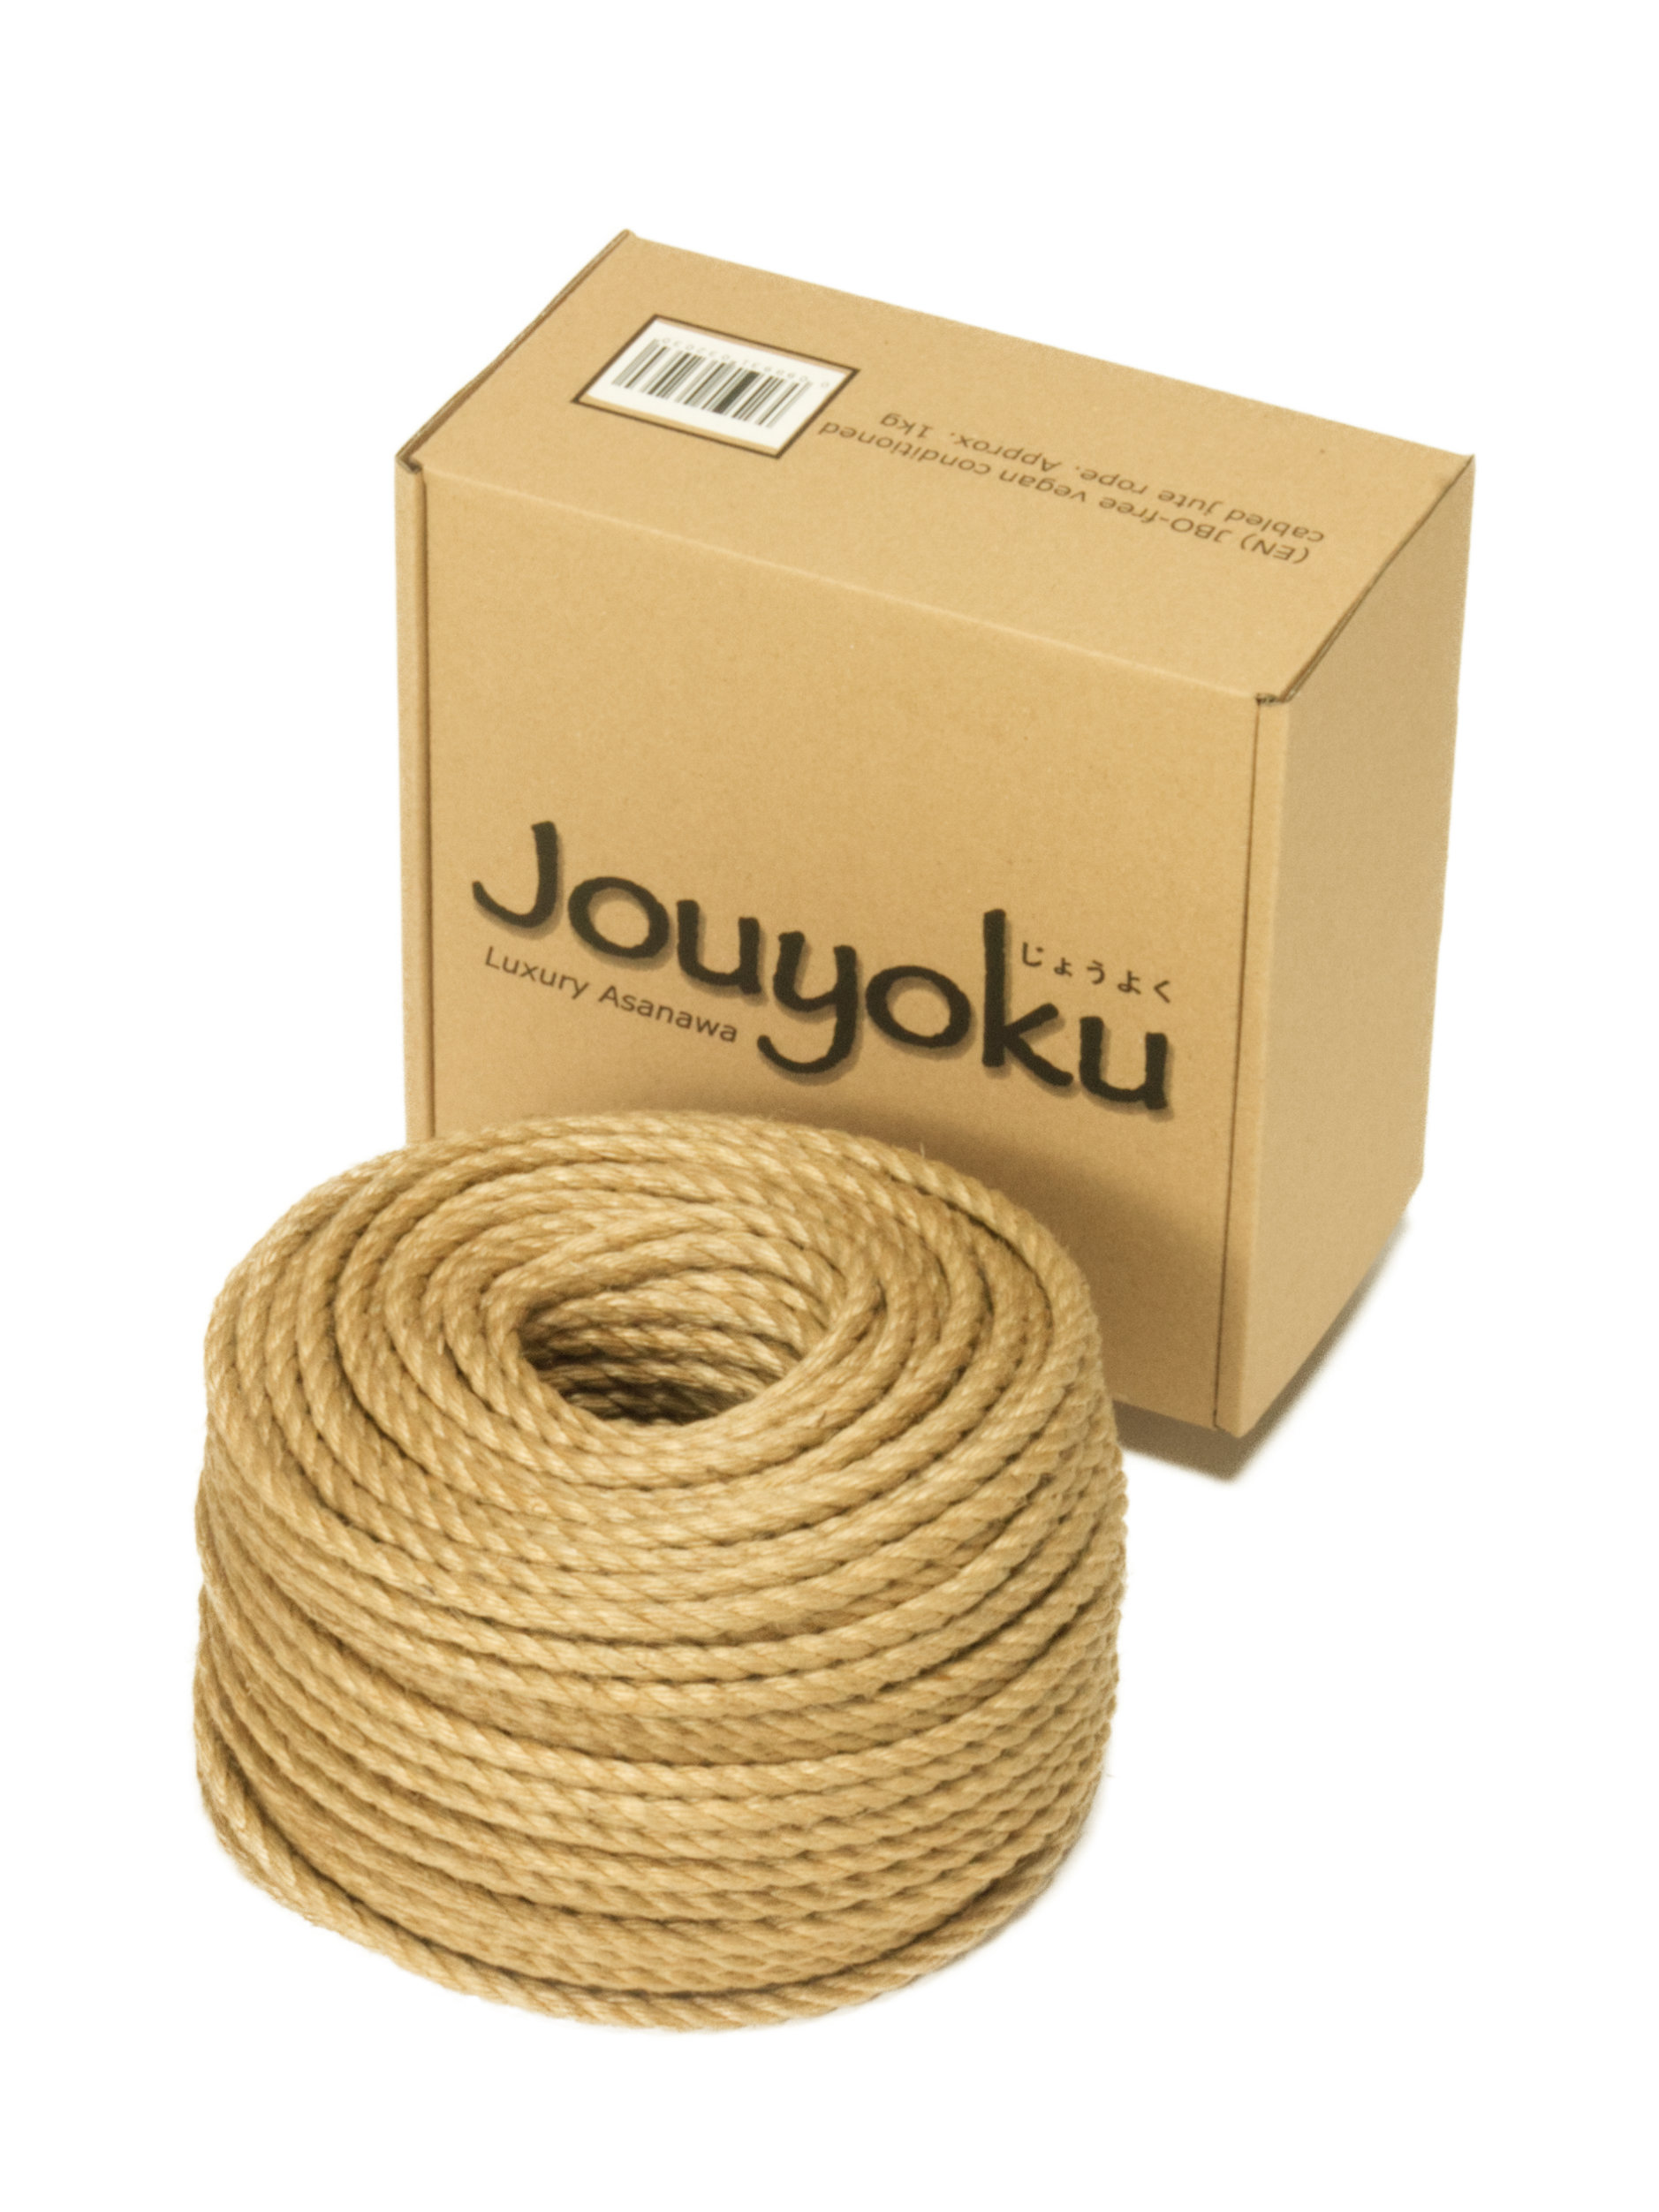 Jouyoku MINI-ROLL - jute rope for Shibari, Kinbaku bondage, ~1kg 